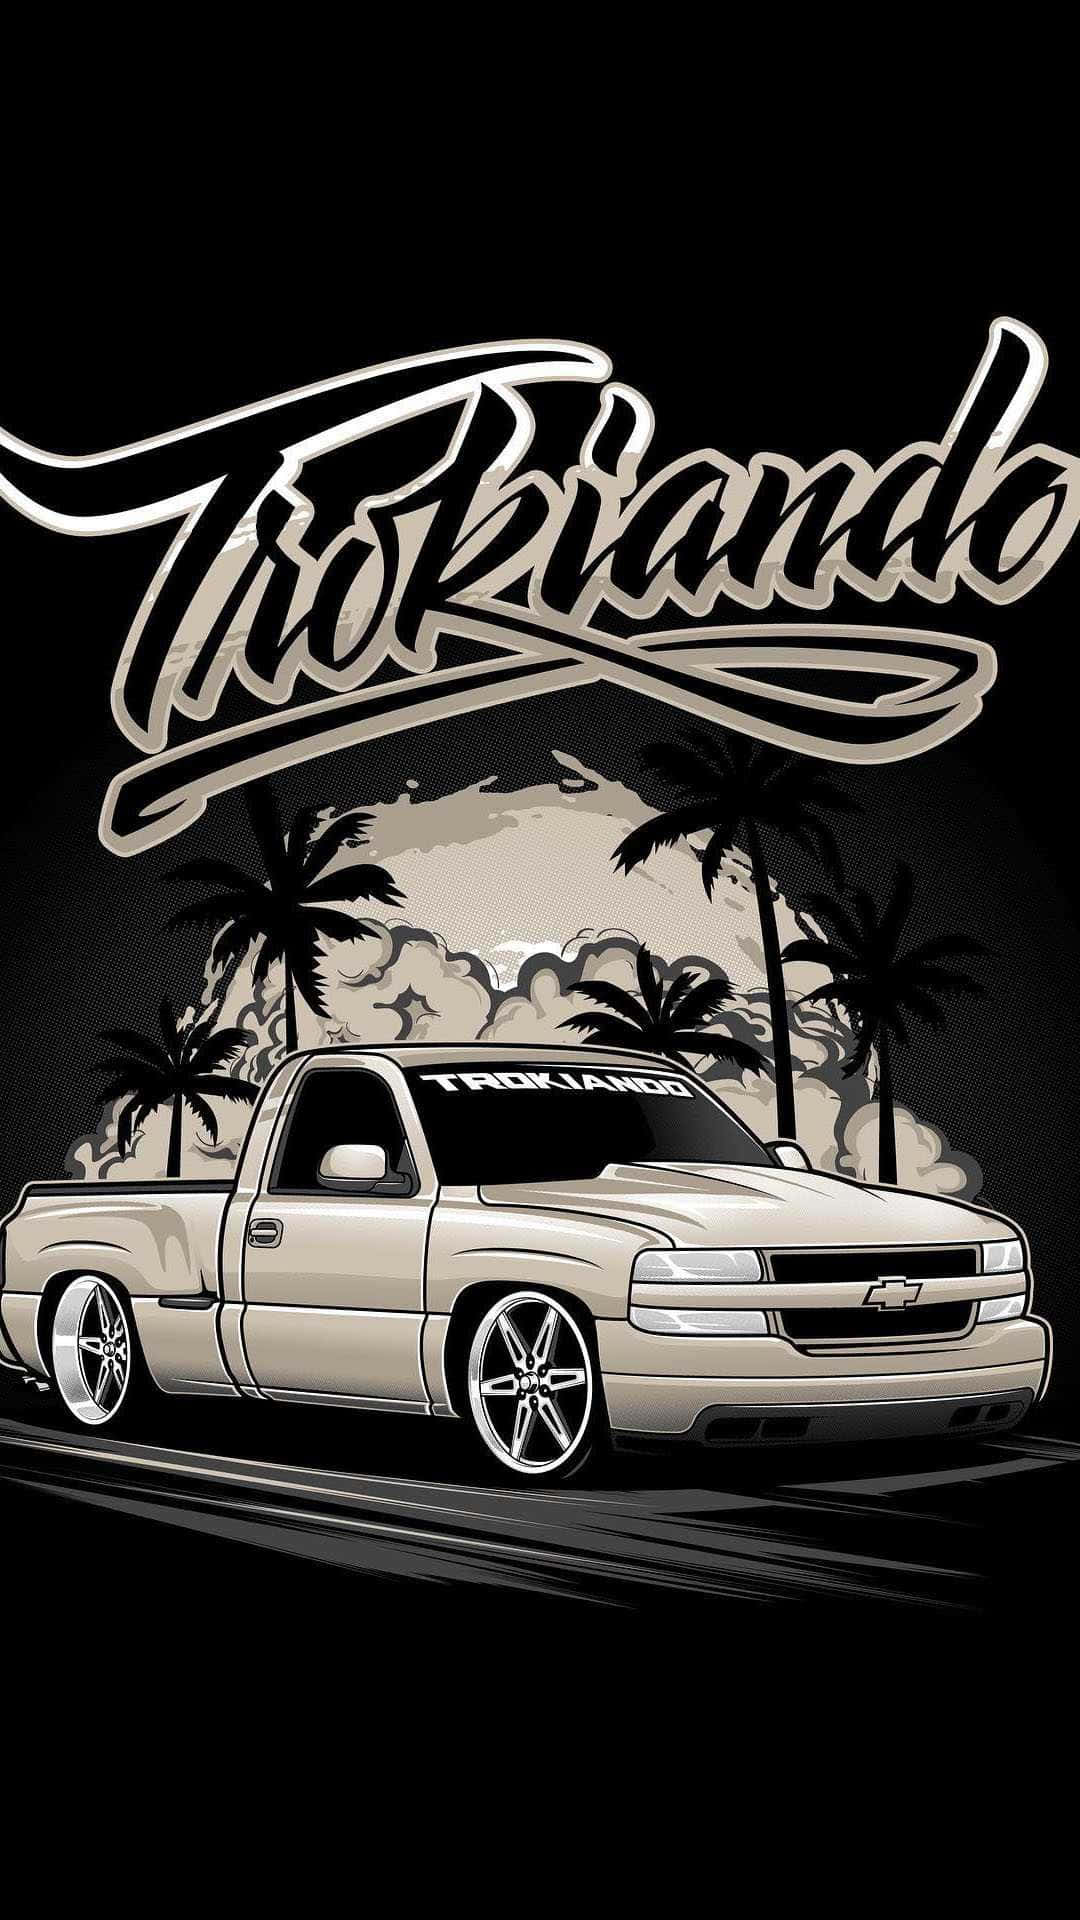 Trokando Chevy Truck Tropical Backdrop Wallpaper